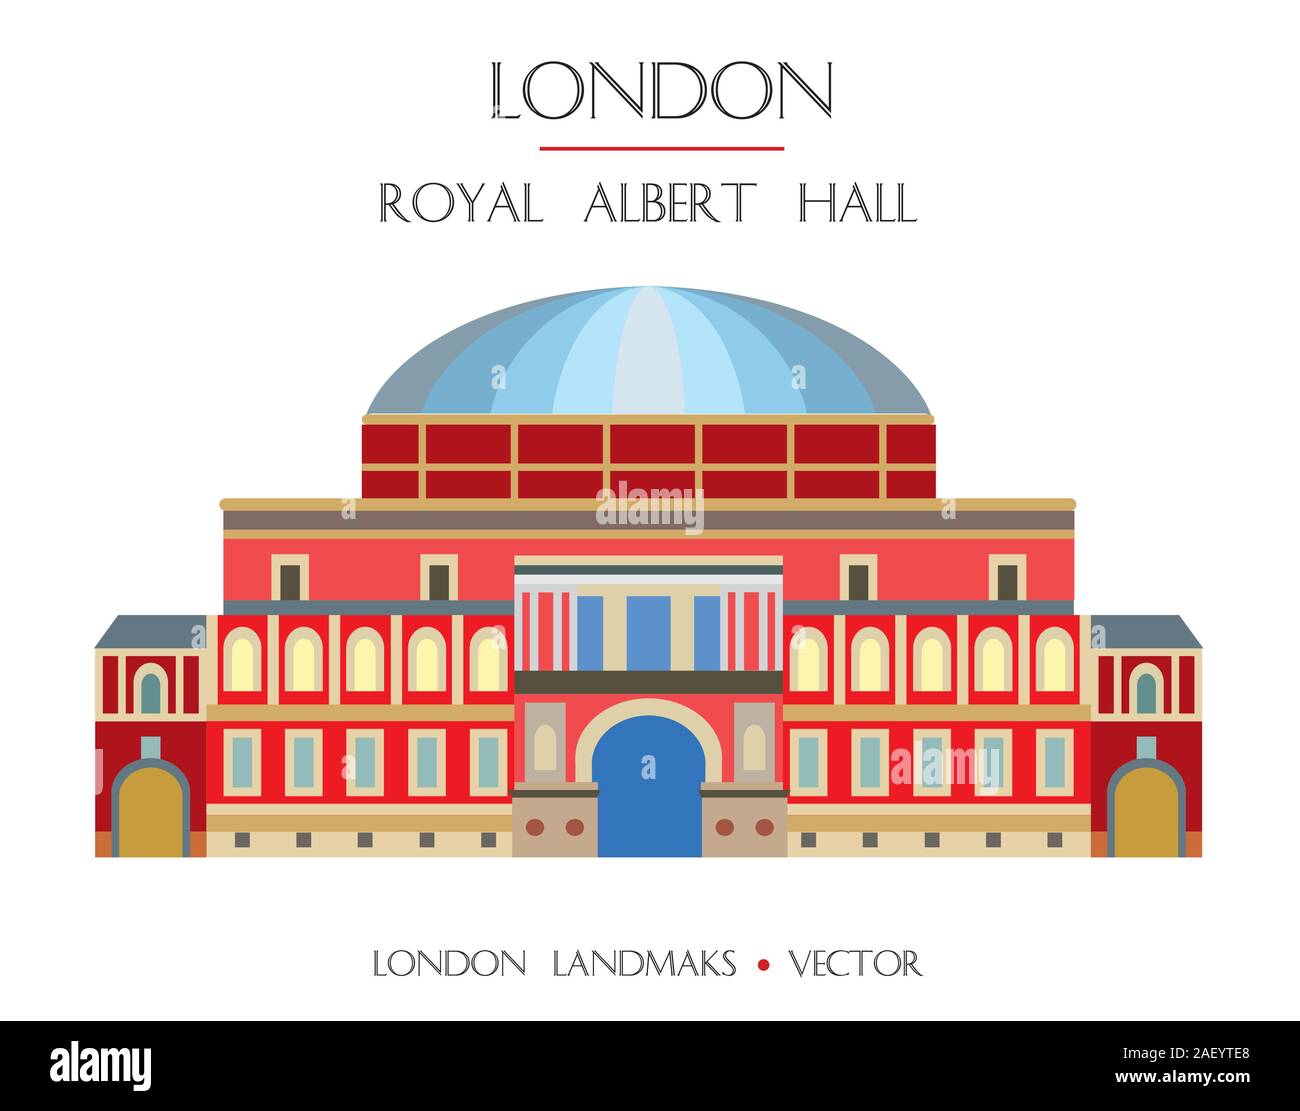 Bunte Vektor die Royal Albert Hall, das Wahrzeichen von London, England. Vektor flachbild Abbildung auf weißem Hintergrund. Lieferbar Abbildung: Stock Vektor